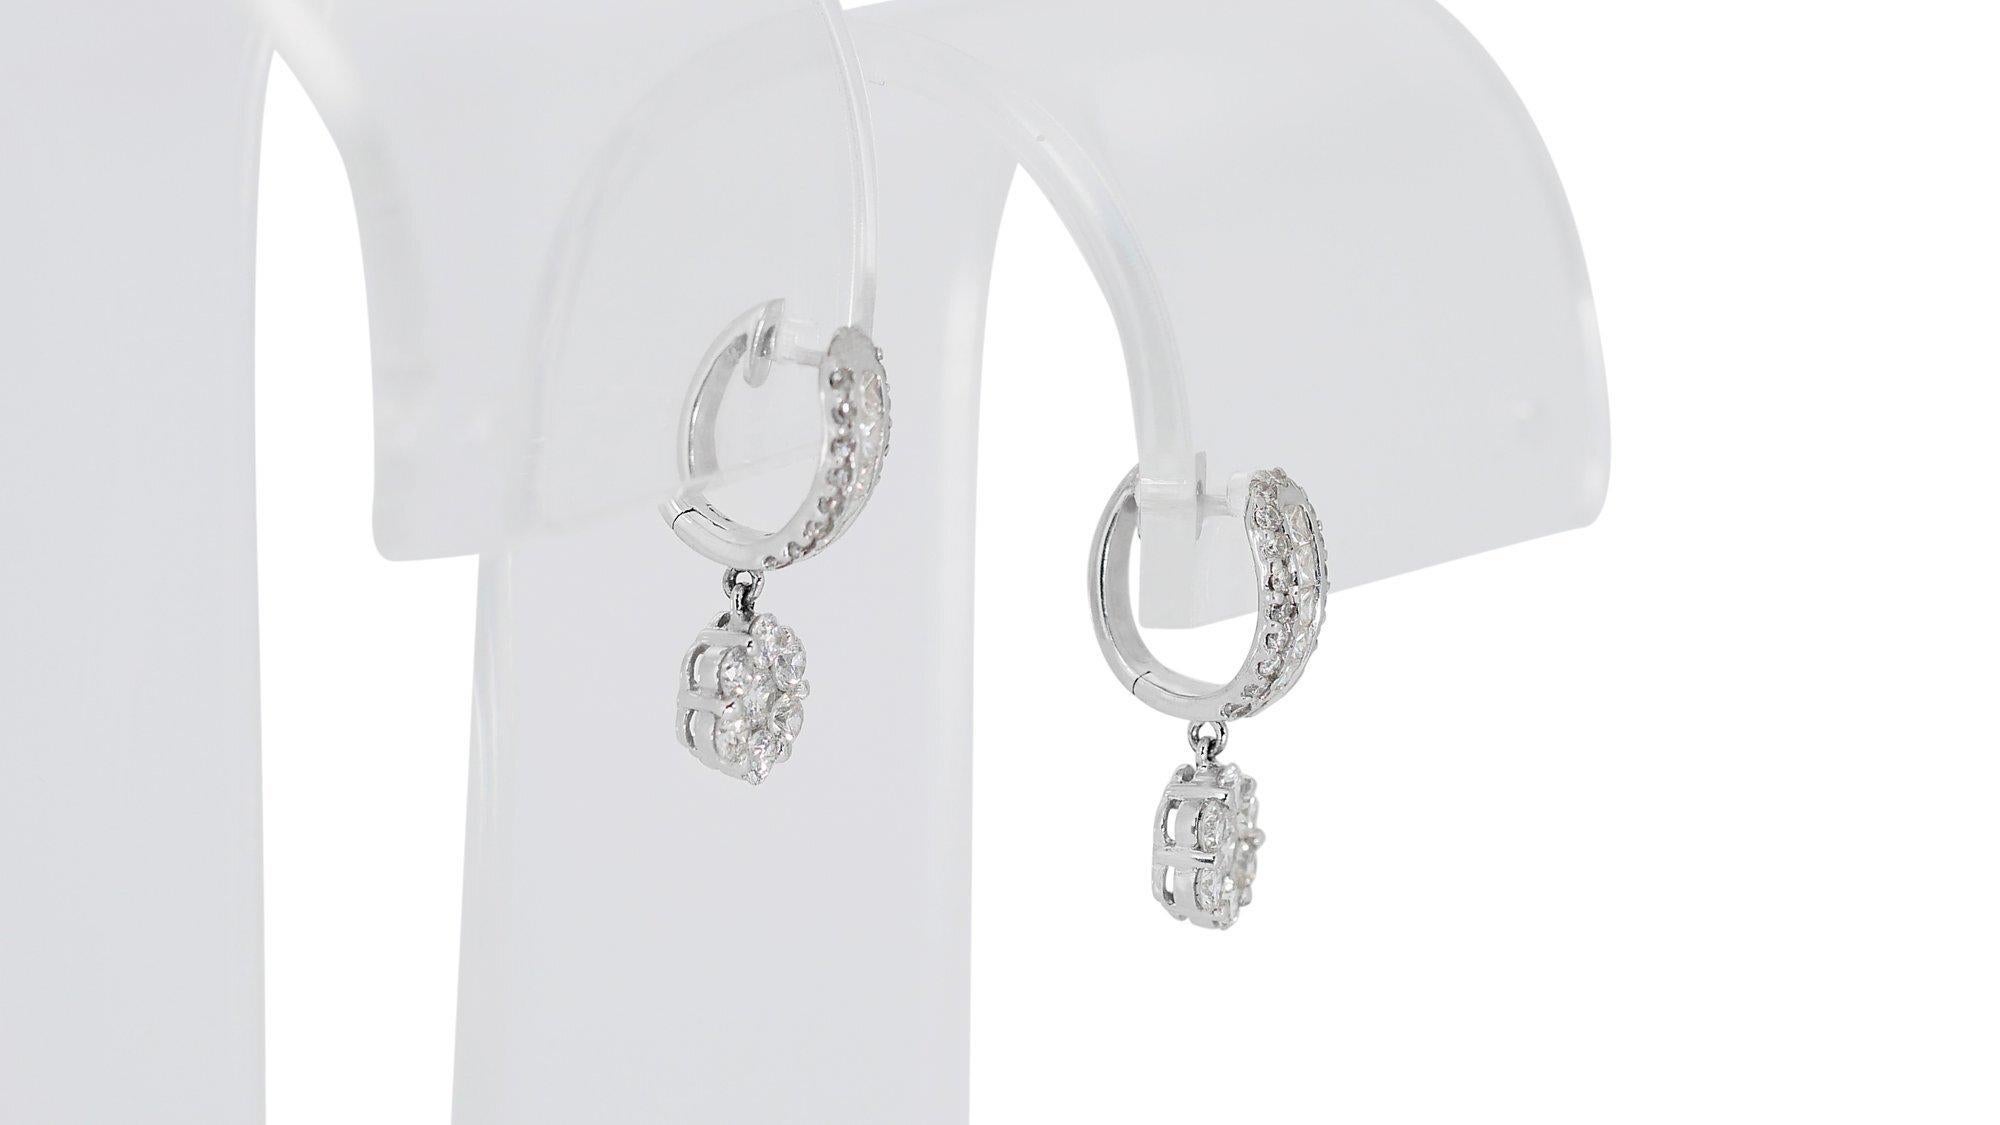 Elegant 18 kt. White Gold Earrings with 2.10 ct Natural Diamonds - IGI Cert 4